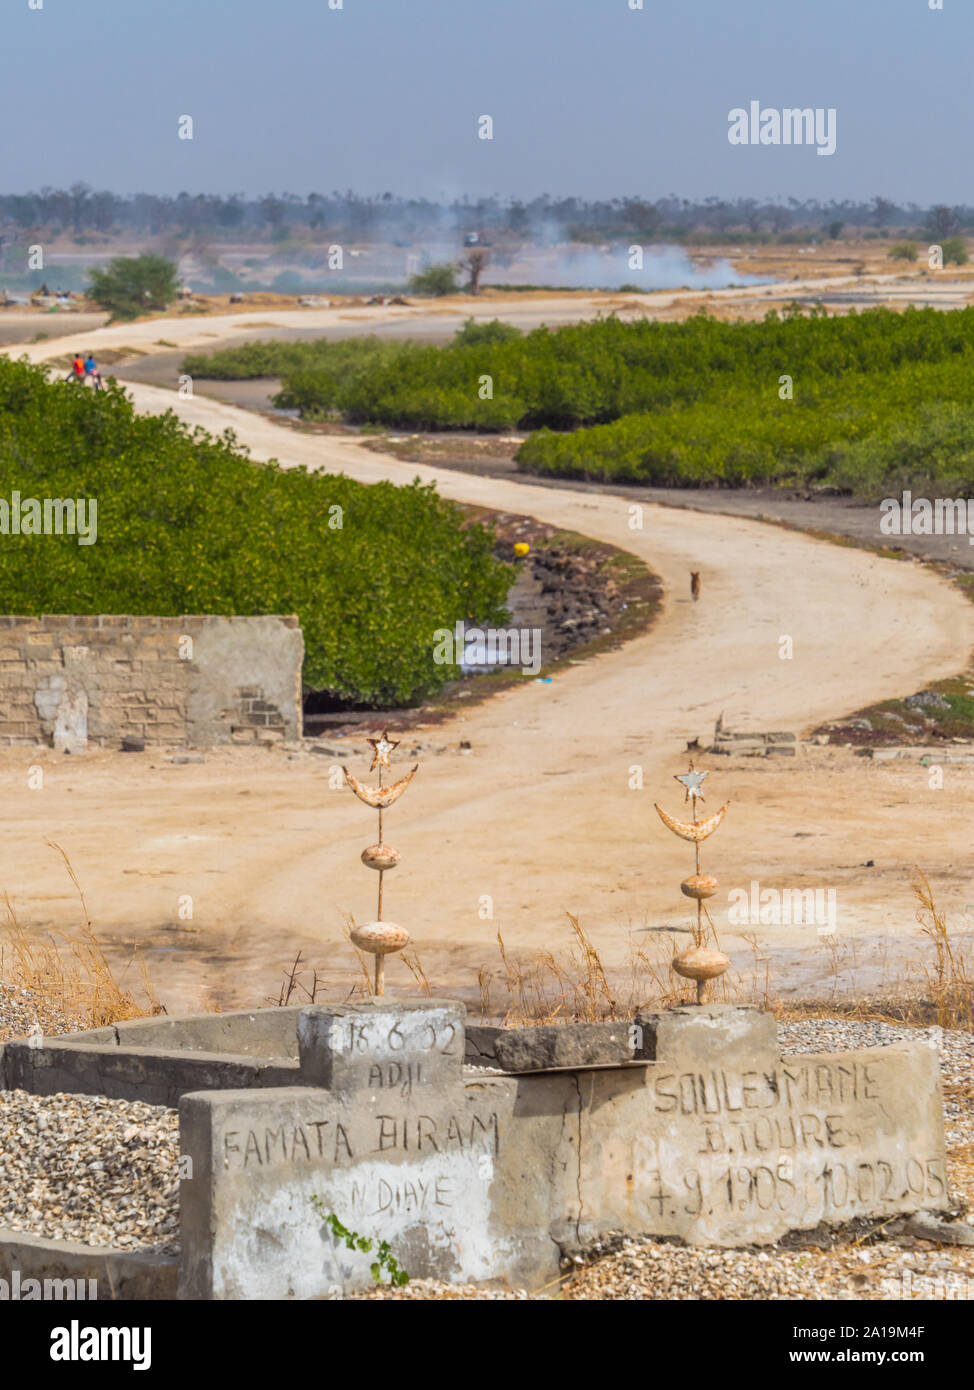 Joal-Fadiout, Senegal - Januar, 26, 2019: muslimische Gräber auf dem Friedhof. Eine kurvenreiche Straße im Hintergrund Joal-Fadiouth townl. Afrika. Stockfoto